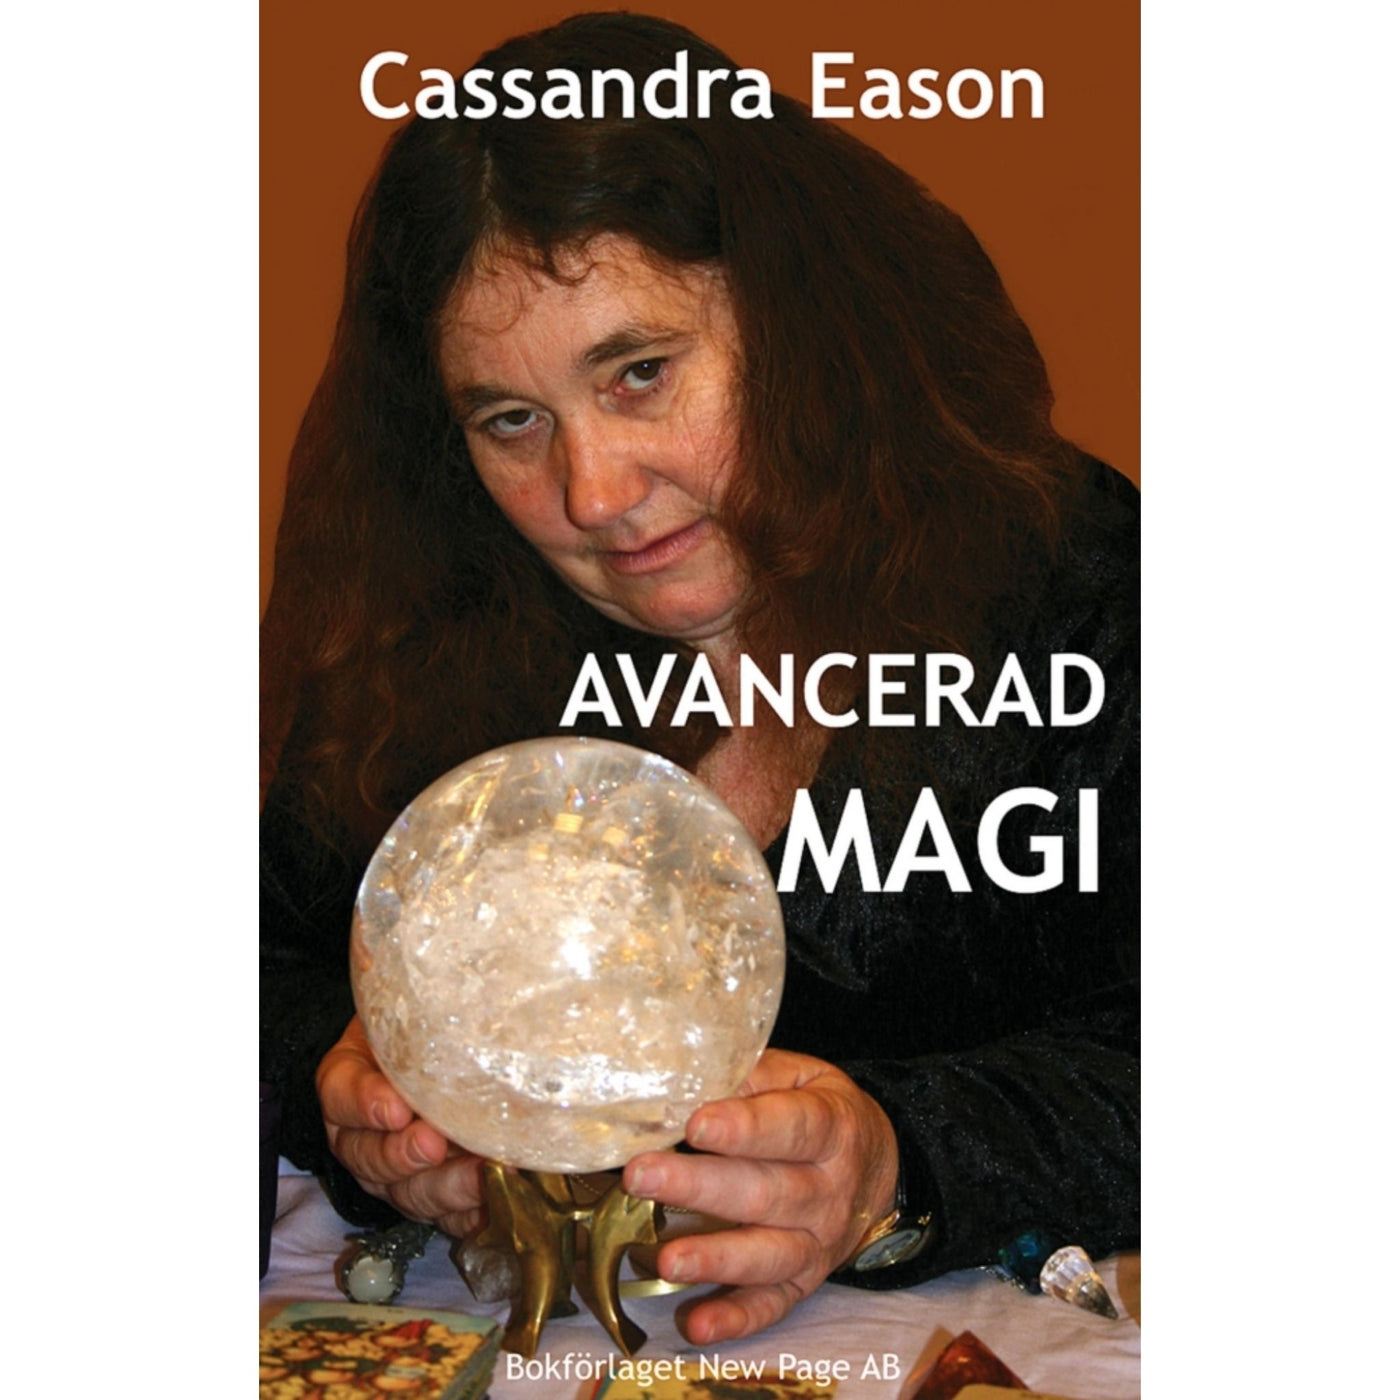 Avancerad Magi - Cassandra Eason